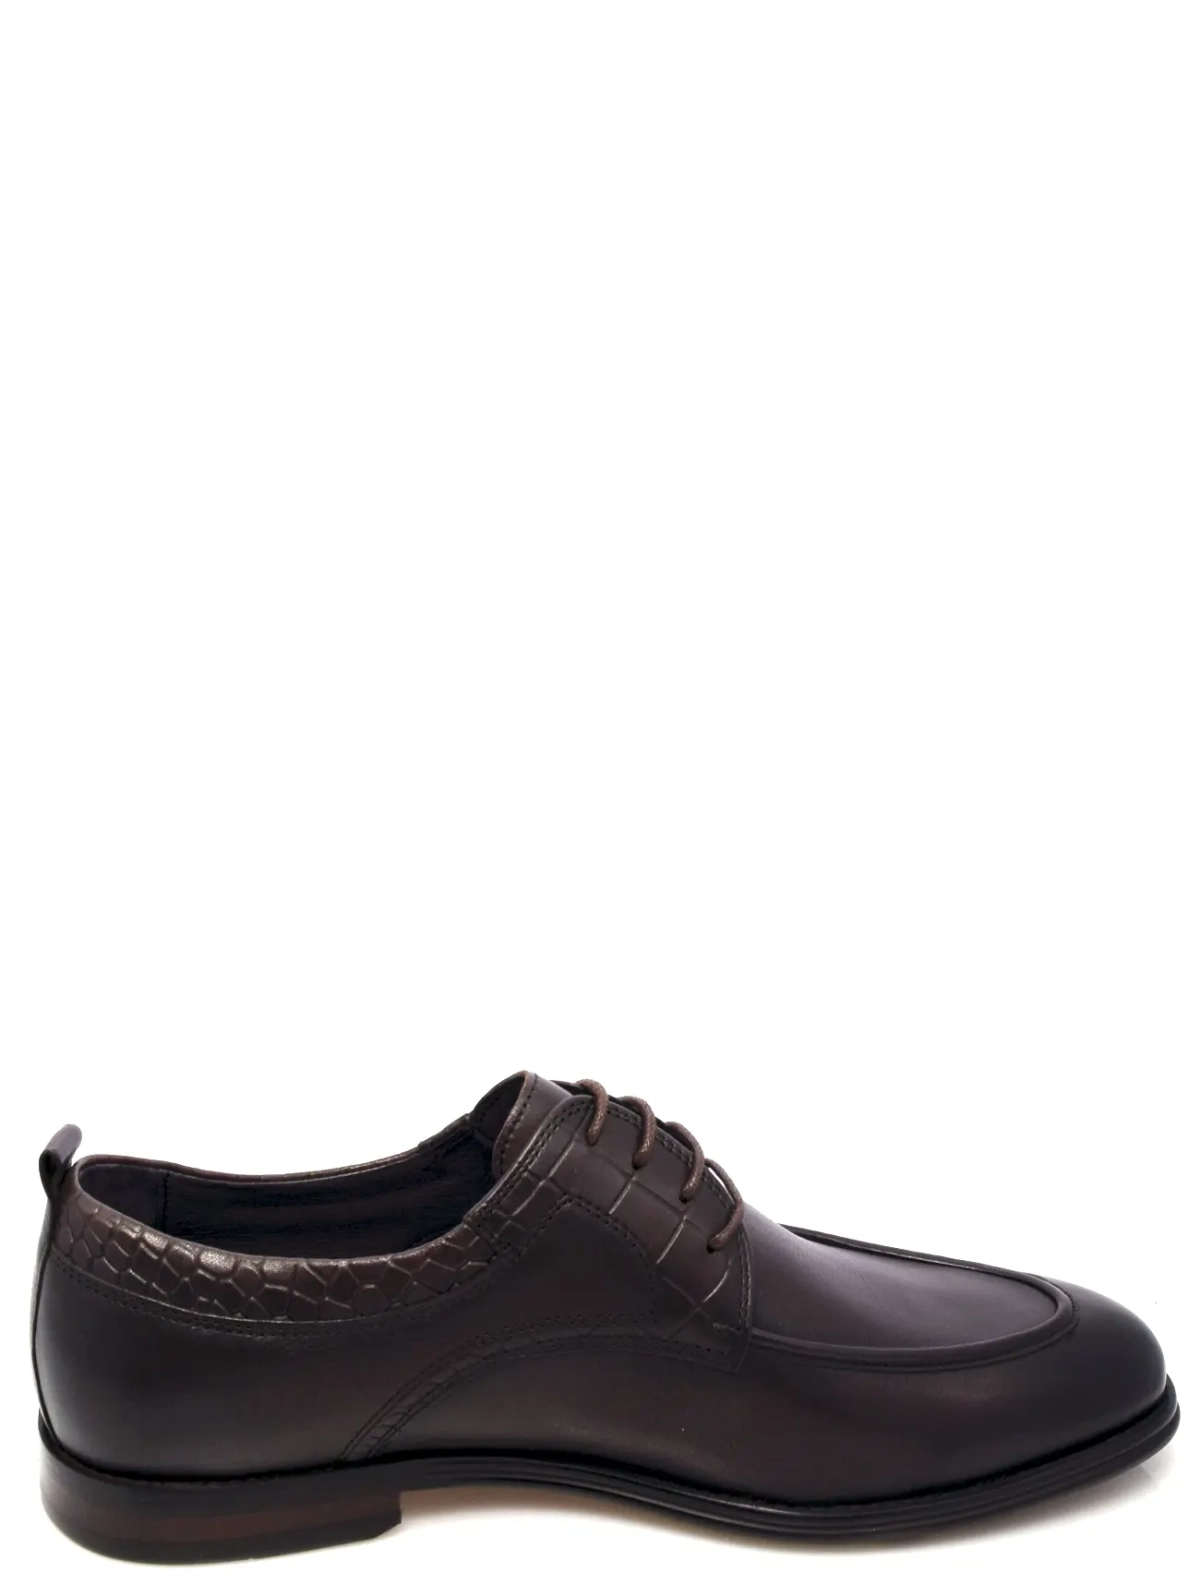 Roscote A0060-901HA-10G-T4696 мужские туфли